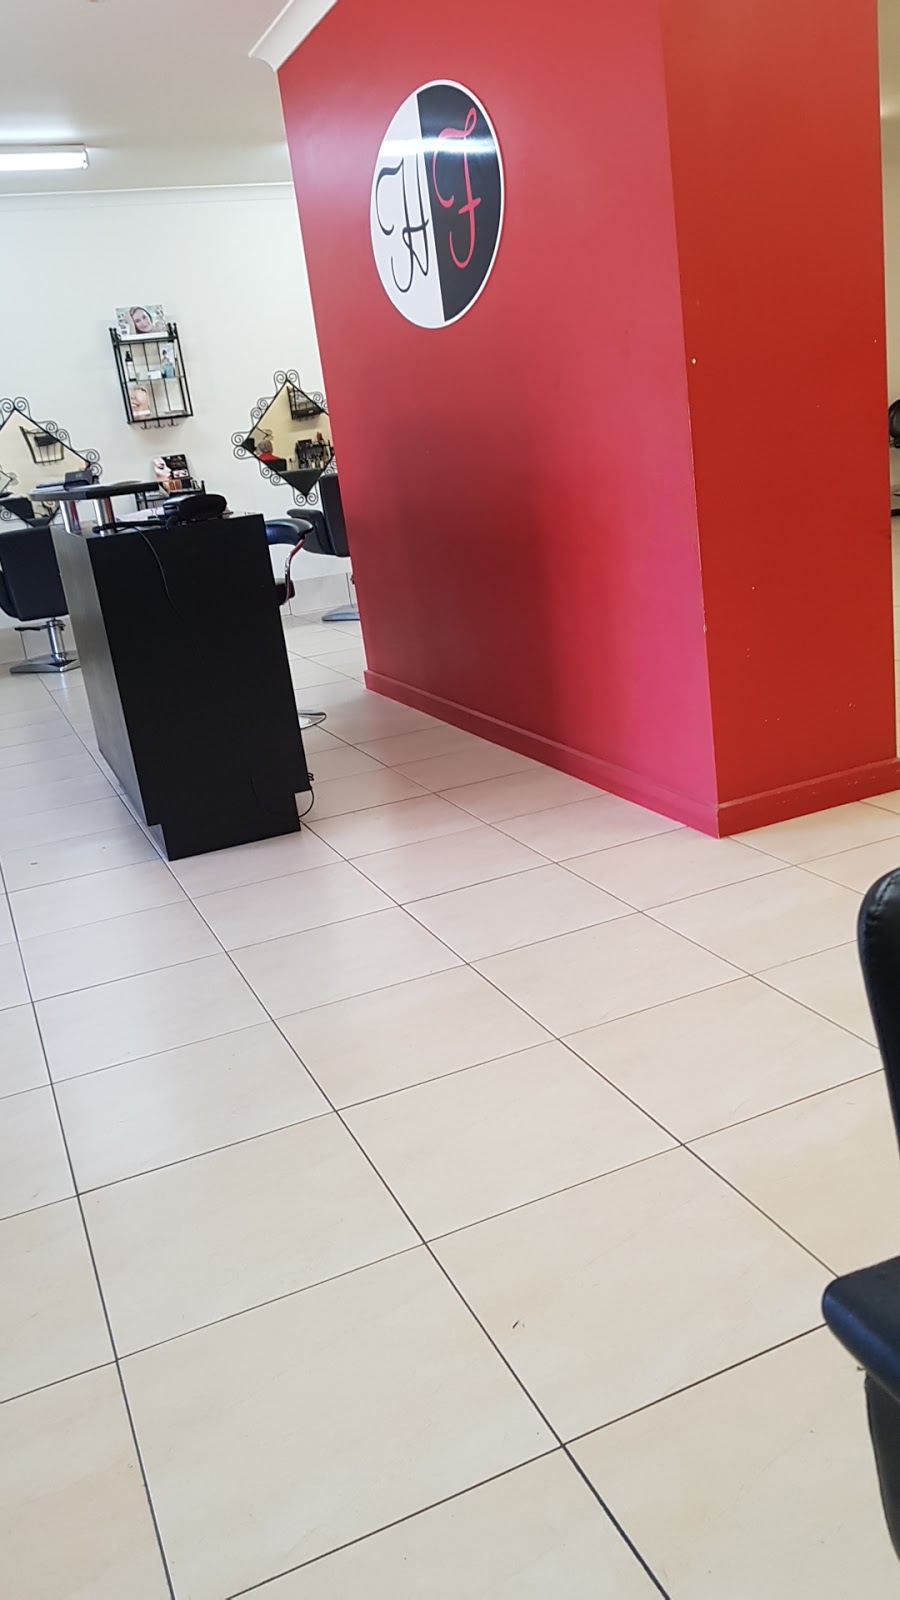 Hair Flair On Knapman | beauty salon | 42 Knapman St, Port Pirie SA 5540, Australia | 0408324217 OR +61 408 324 217